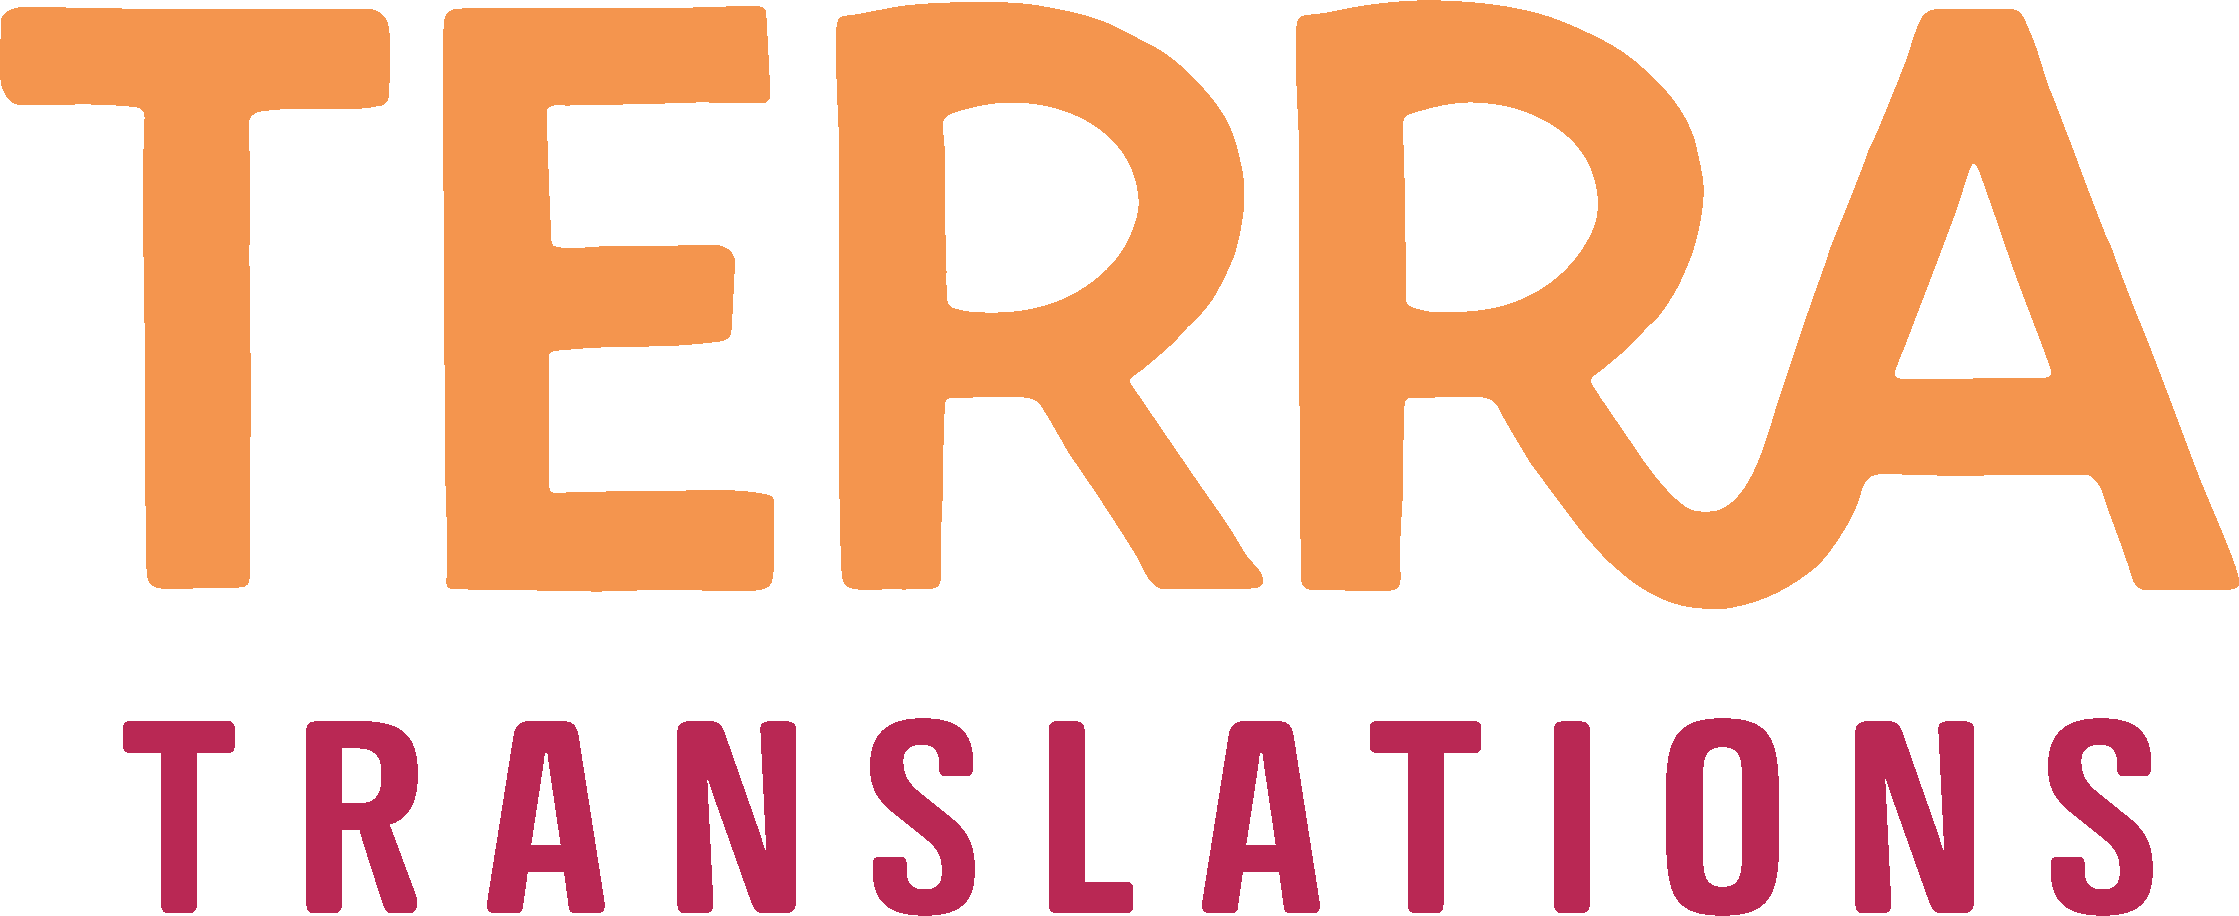 Terra Translations